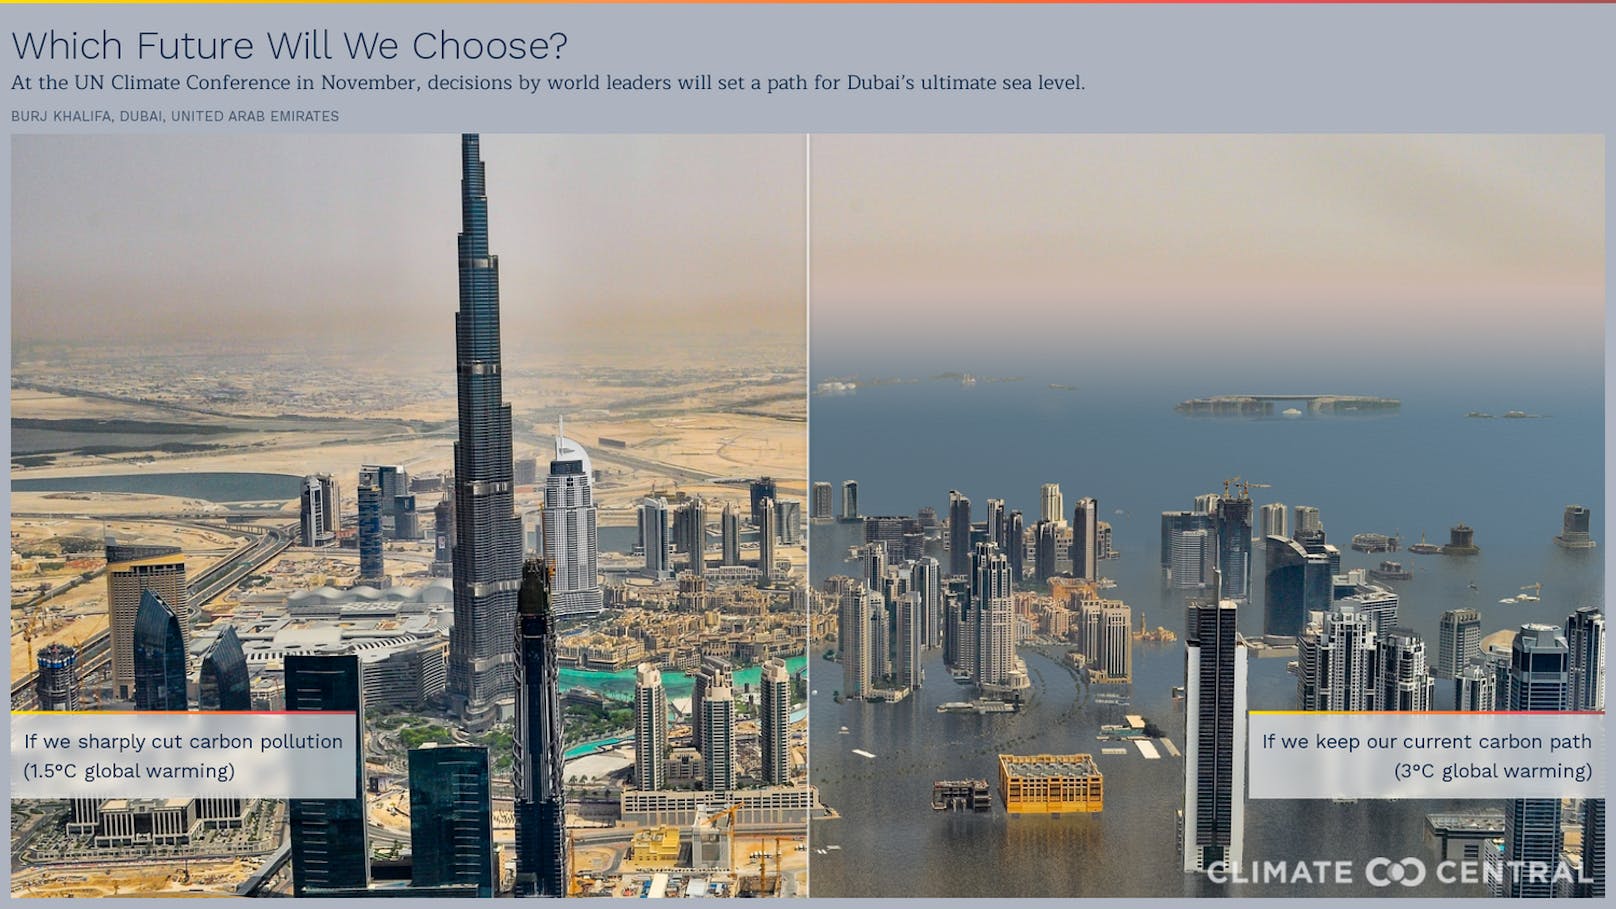 Von den Sanddünen der Wüstenstadt Dubai mit ihrer Sehenswürdigkeit, dem Burj Khalifa, wäre nichts mehr übrig.